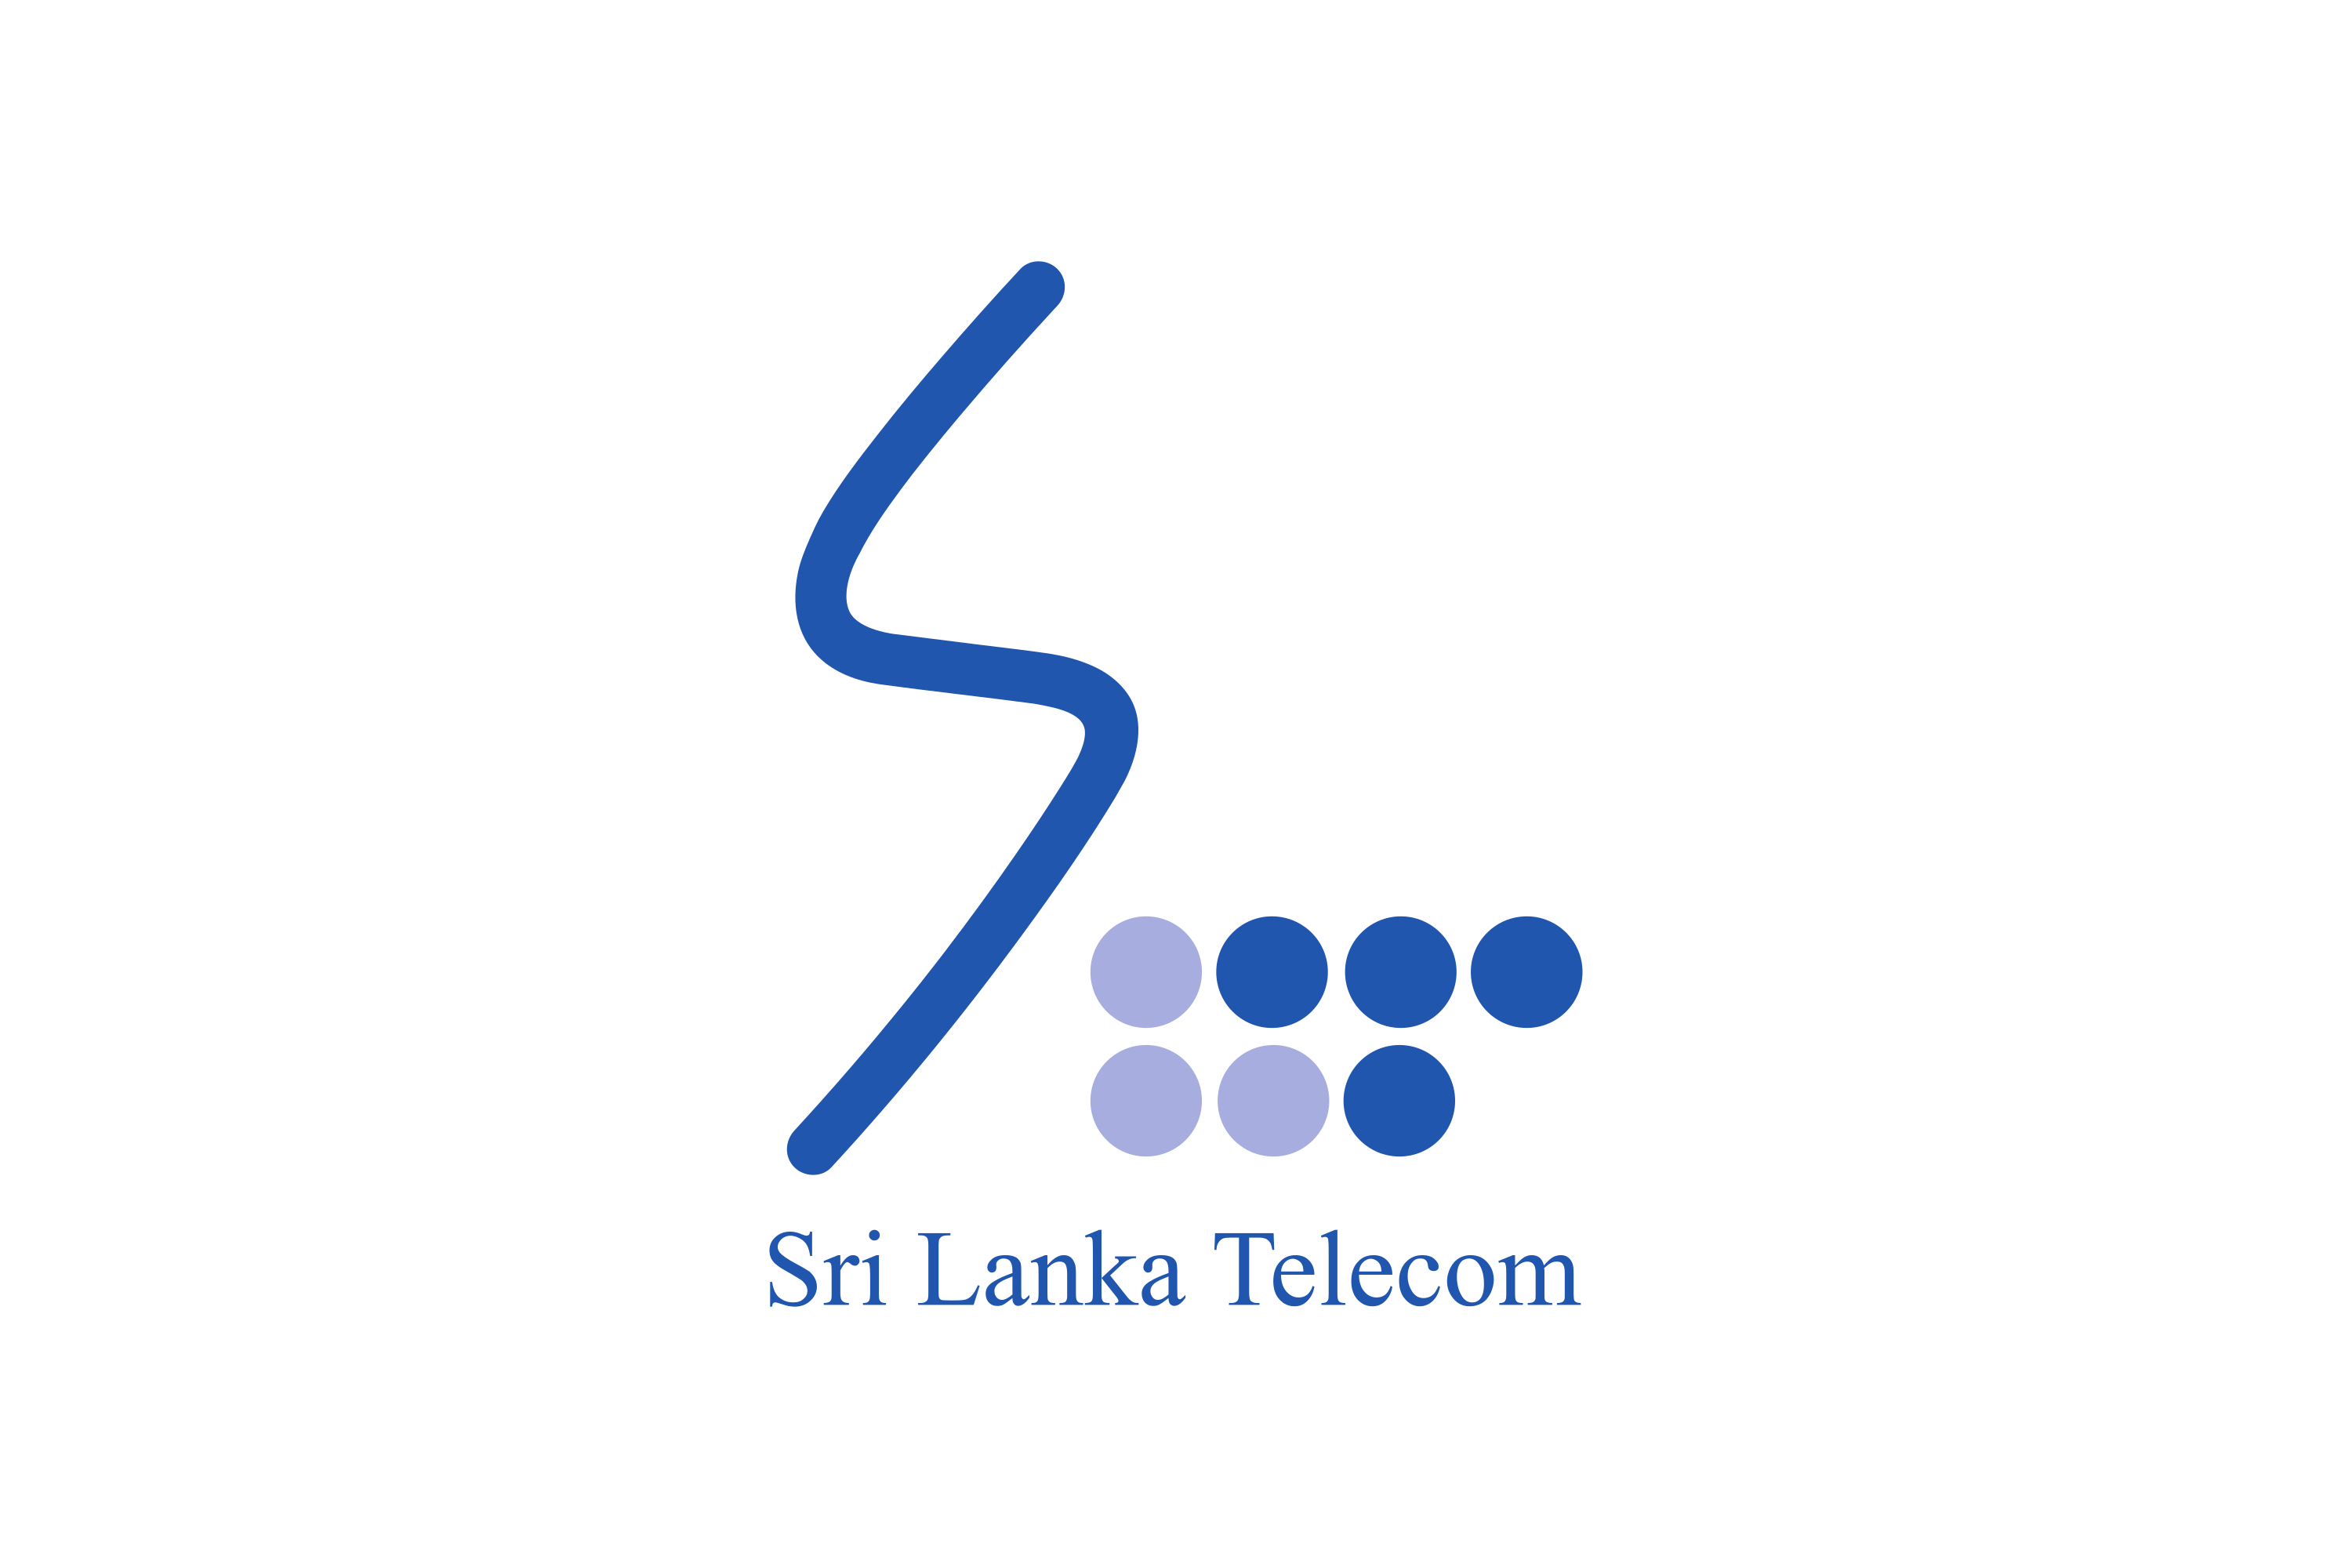 Download Sri Lanka Telecom Logo in SVG Vector or PNG File Format - Logo